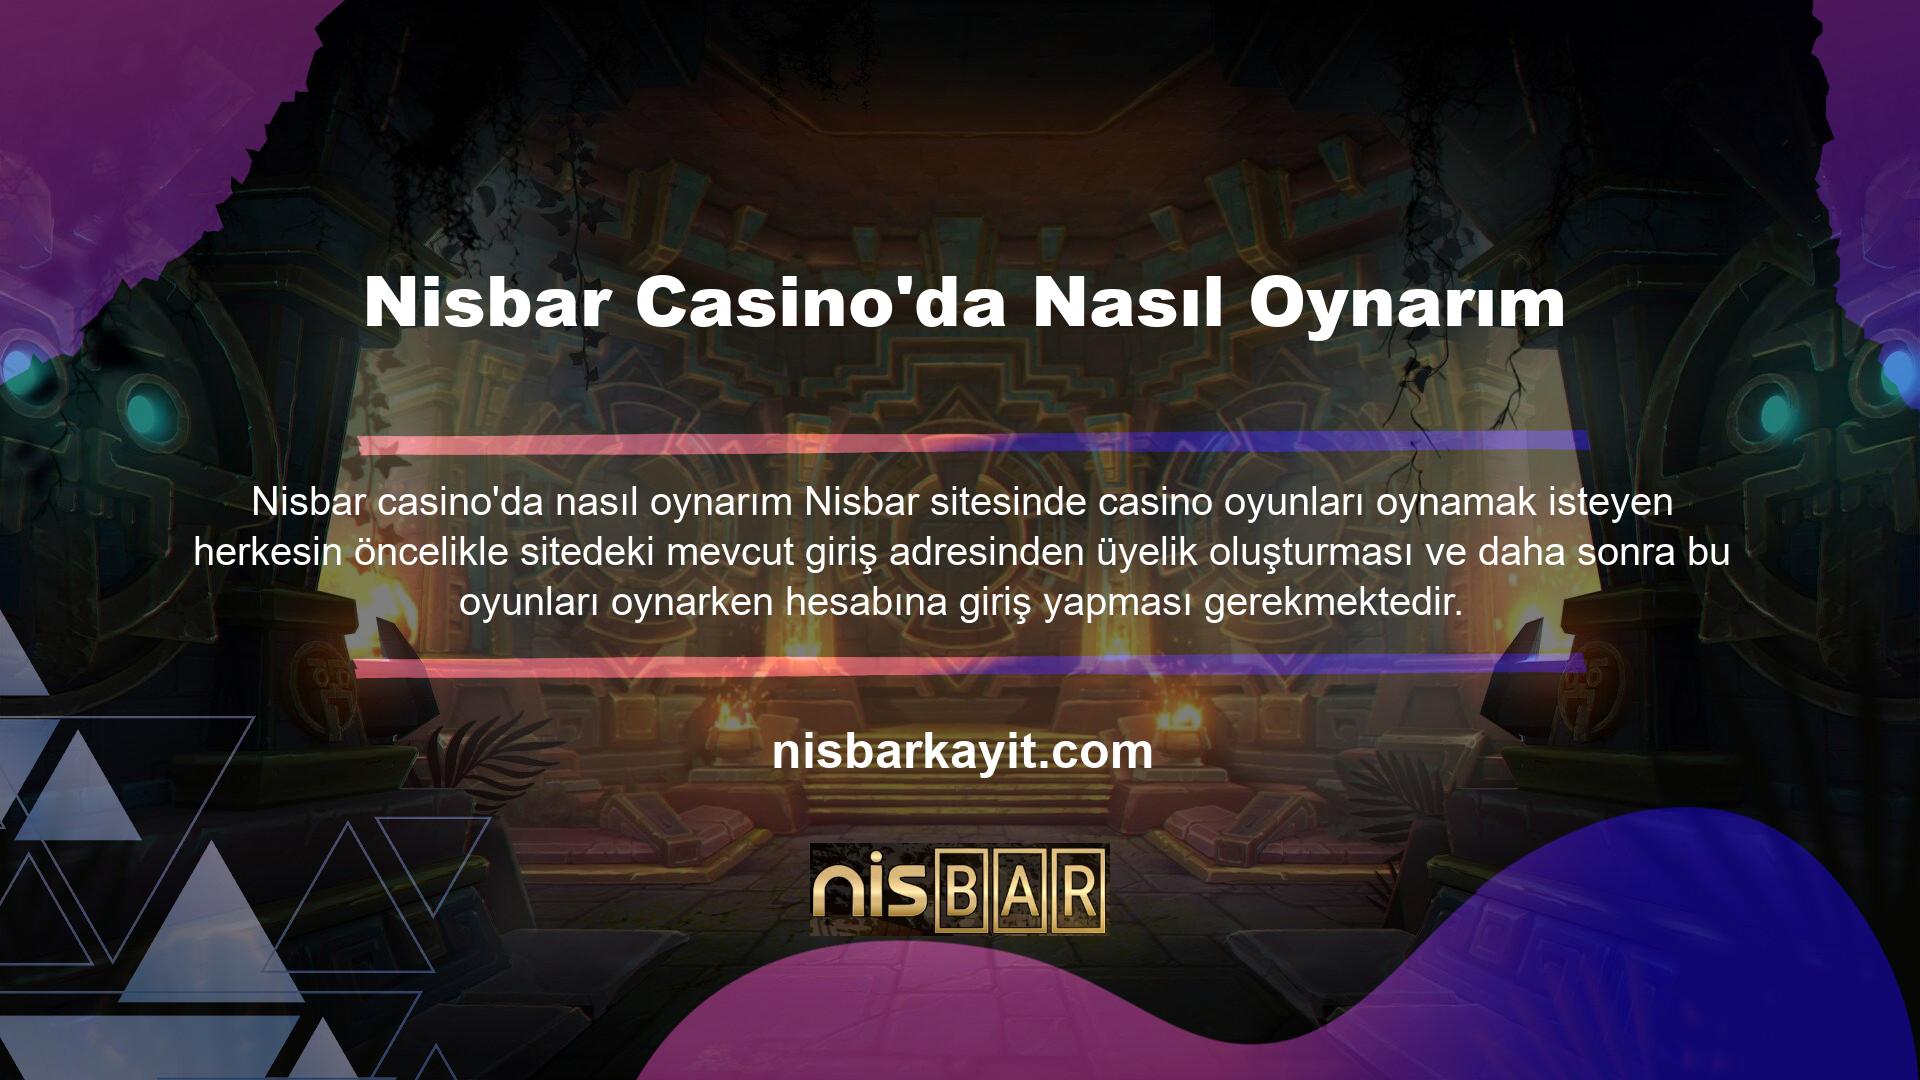 Nisbar Casino'da Nasıl Oynarım